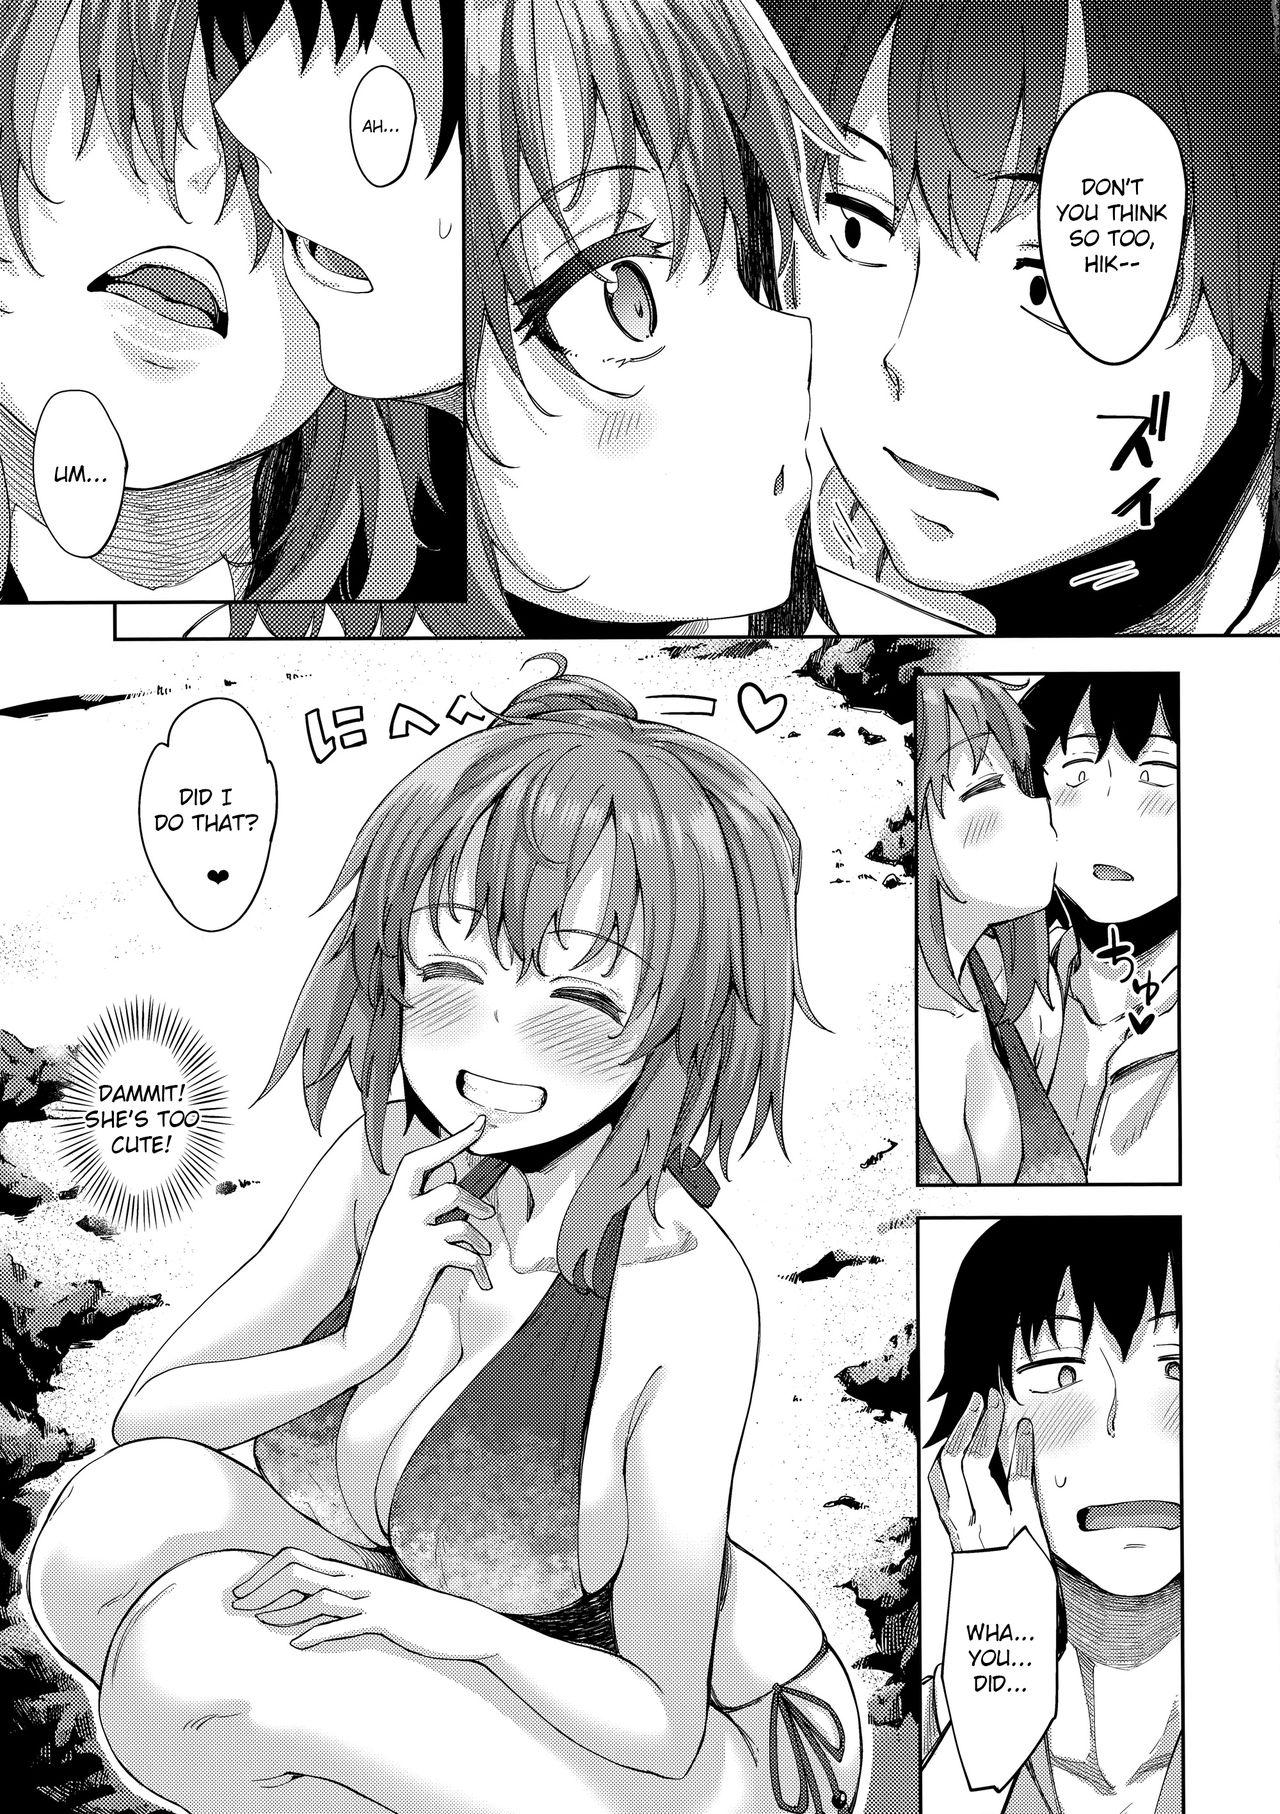 Breeding LOVE STORY #05 - Yahari ore no seishun love come wa machigatteiru Gemidos - Page 6